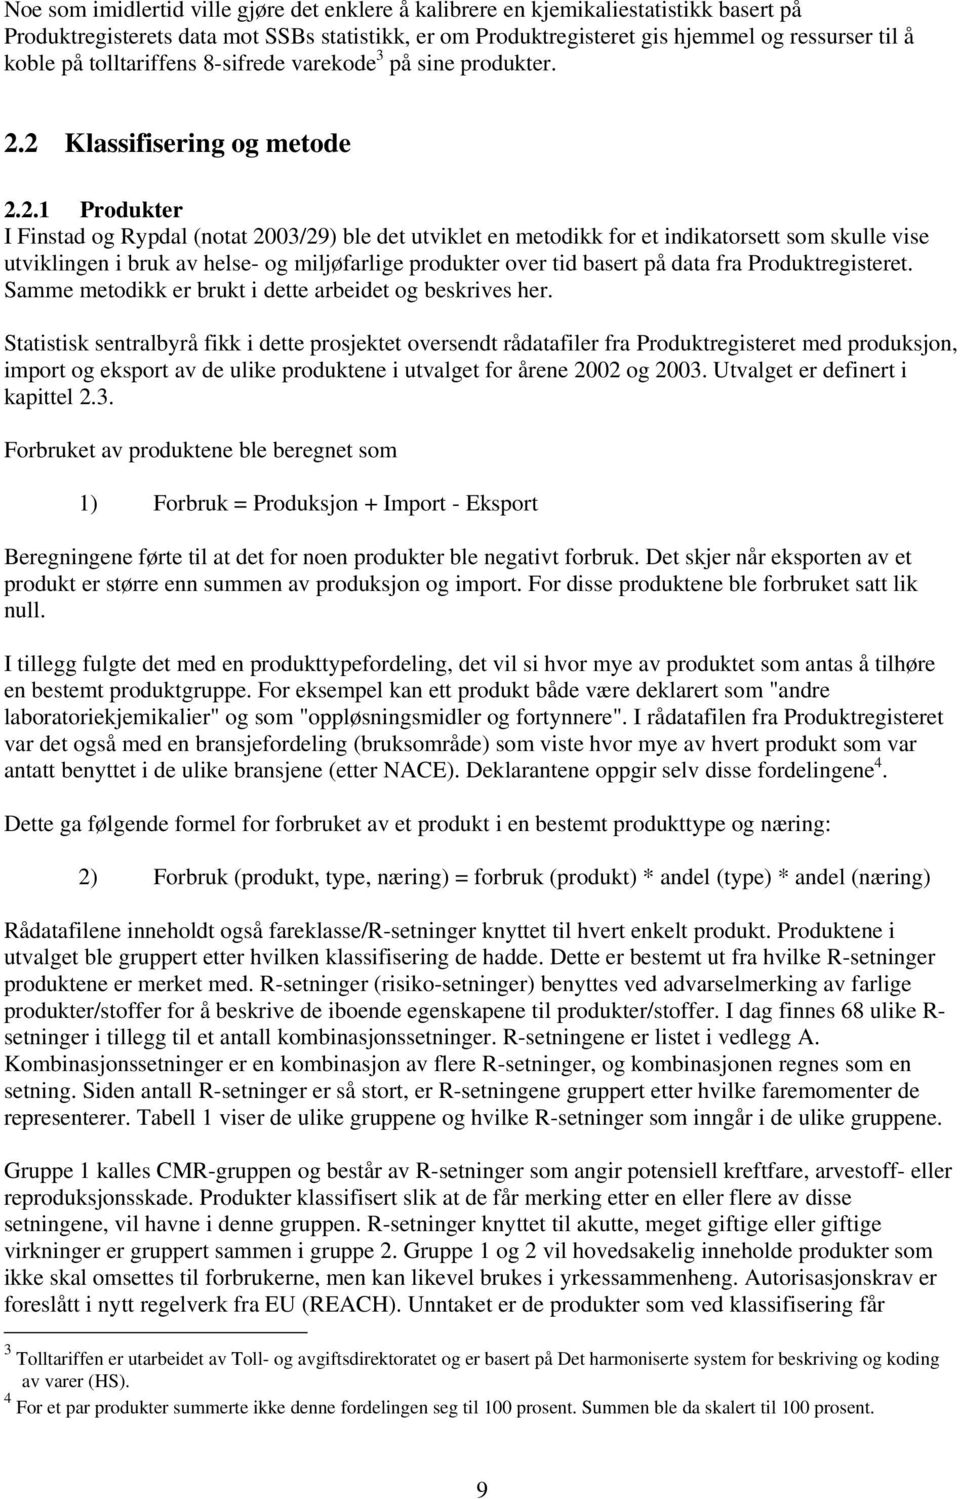 2 Klassifisering og metode 2.2.1 Produkter I Finstad og Rypdal (notat 2003/29) ble det utviklet en metodikk for et indikatorsett som skulle vise utviklingen i bruk av helse- og miljøfarlige produkter